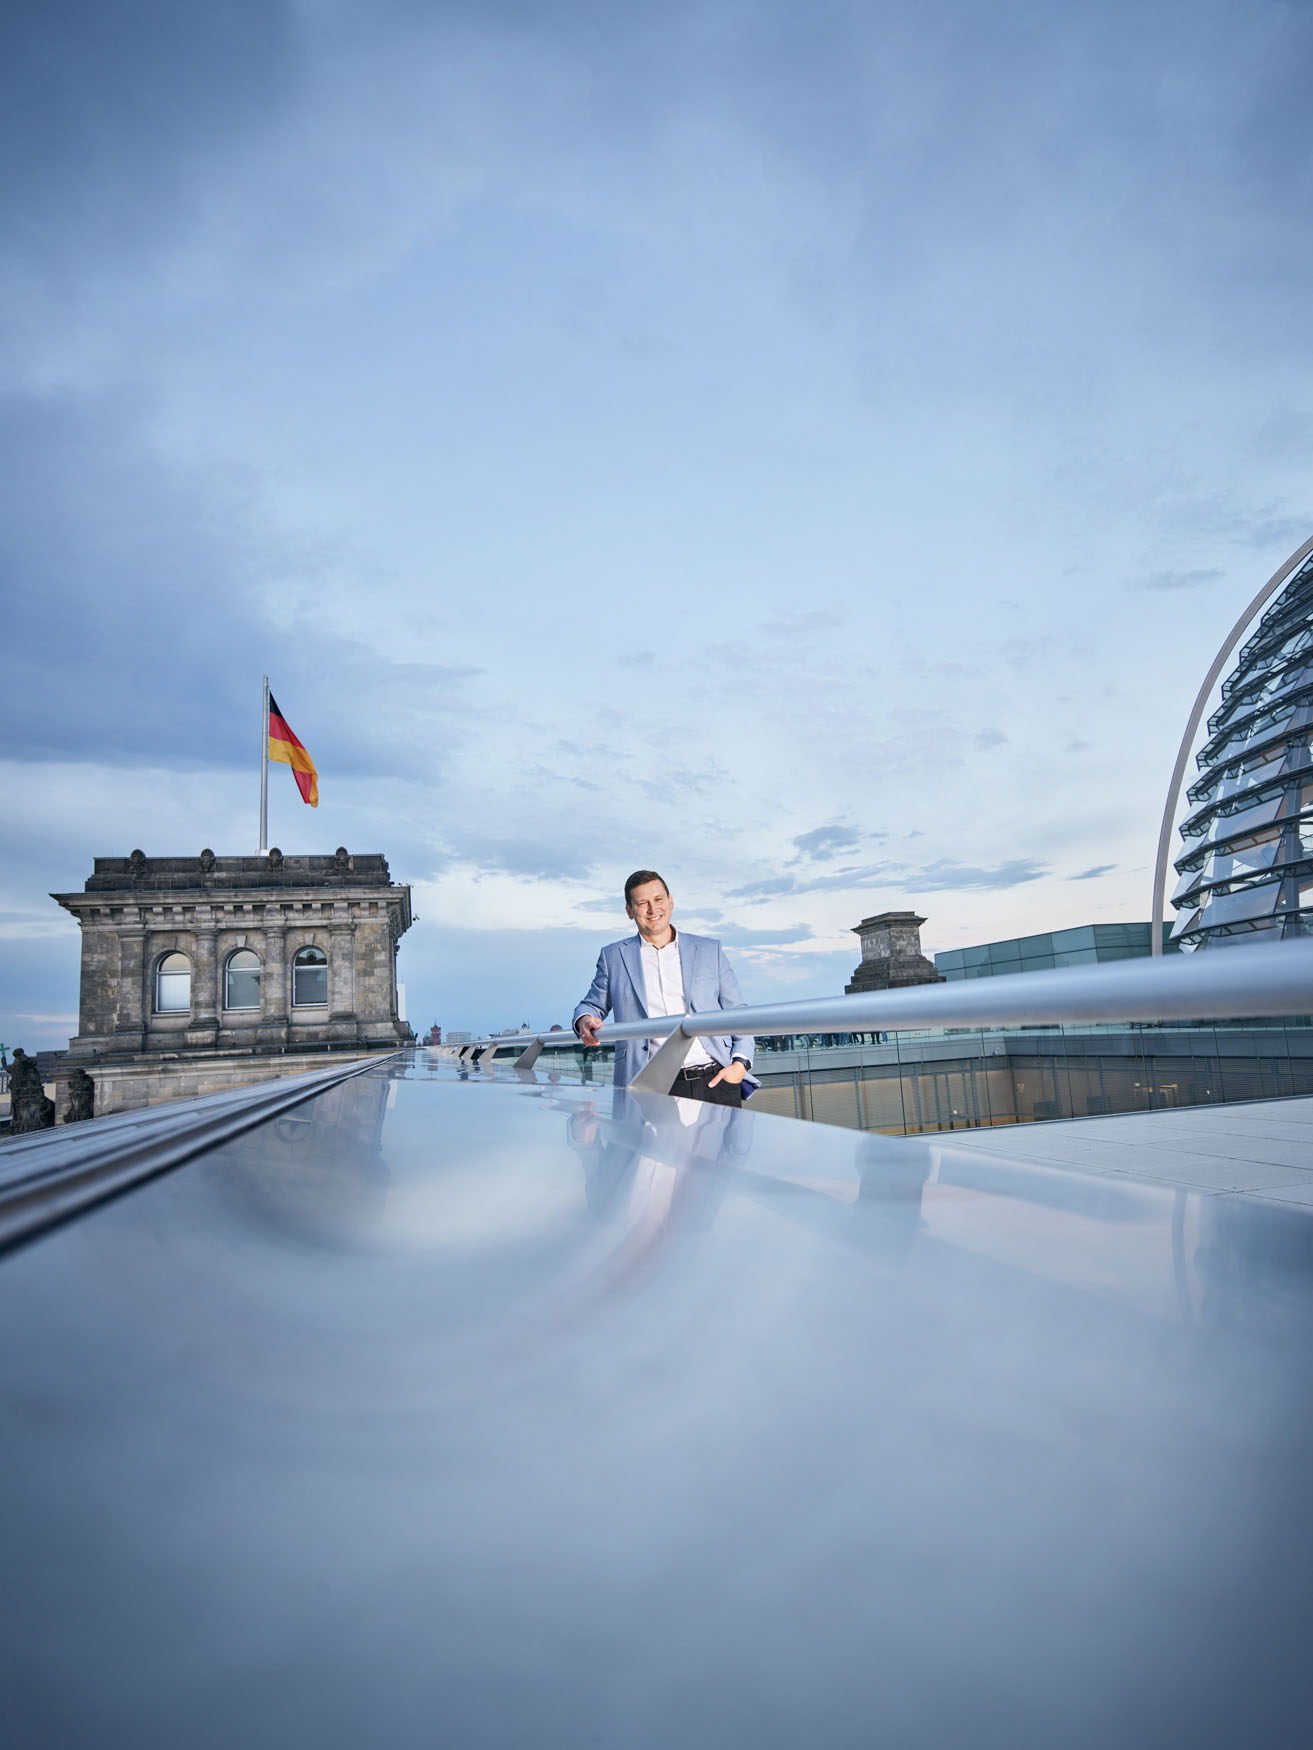 Mario Brandenburg ein super freundlicher und überzeugter „Pfälzer“ Politiker, der sich für die Zukunft Deutschlands einsetzt. Seine Arbeit als Mitglied der FDP zeigt deutlich, dass er an seinen Überzeugungen und Zielen festhält und bereit ist, dafür zu kämpfen. 